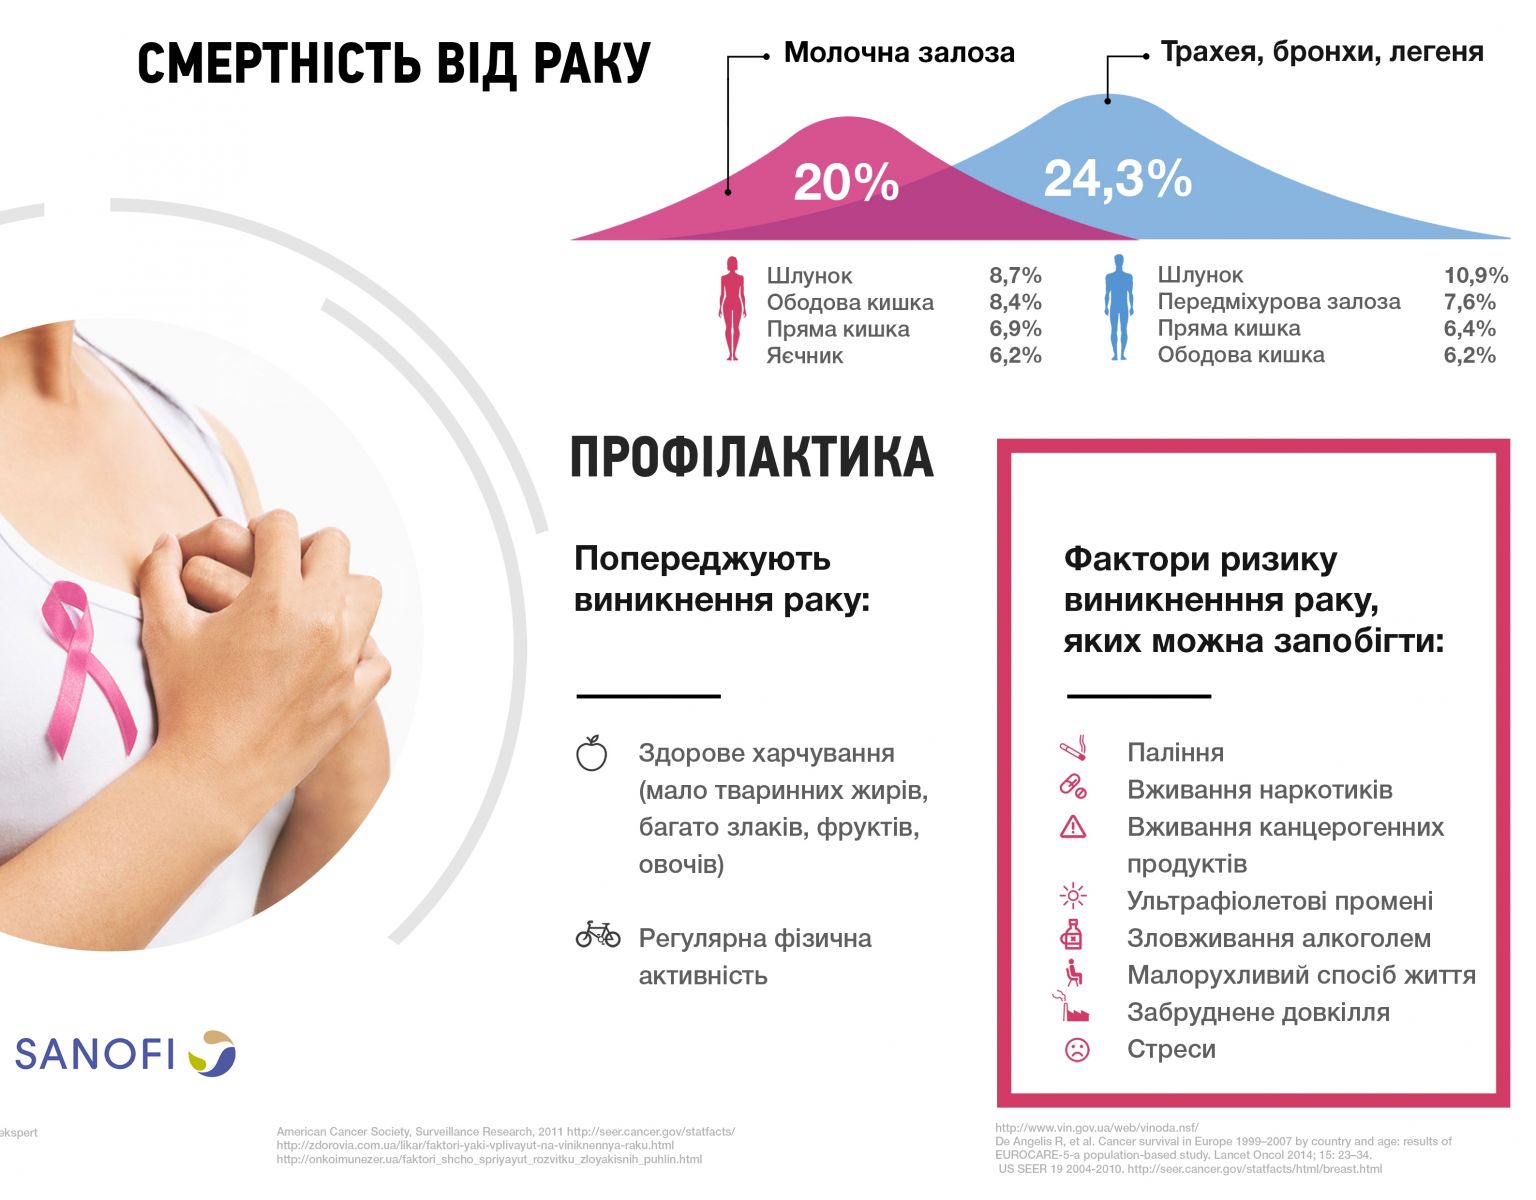 Сколько украинцев рискует заболеть раком?